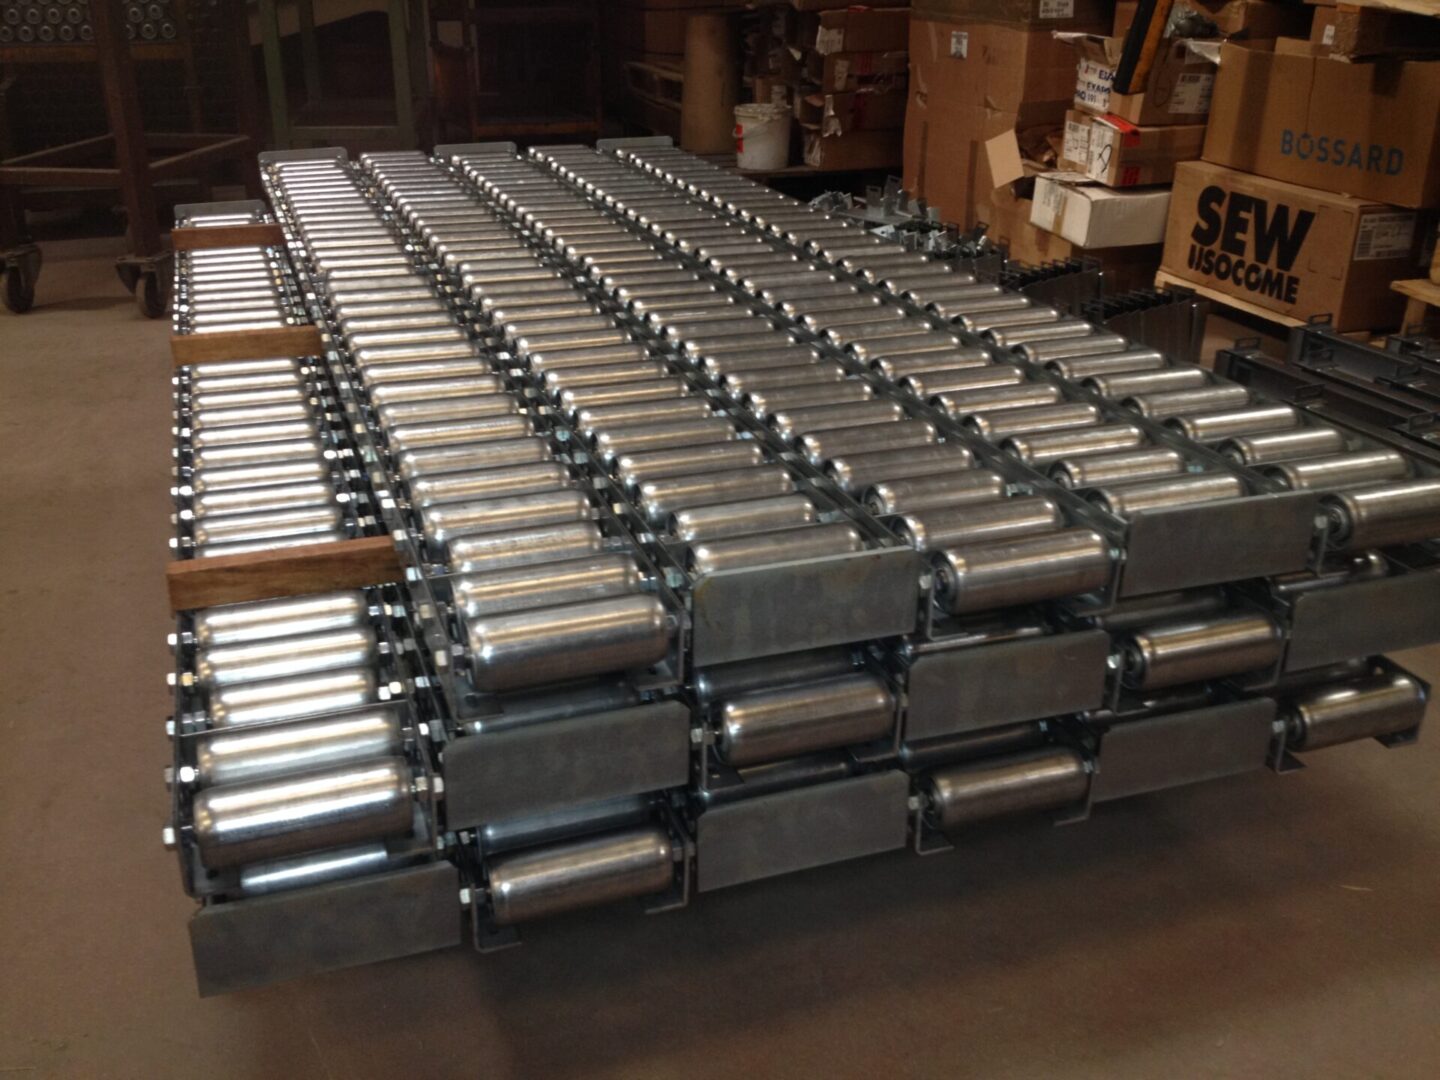 Ensemble de rails à galets au sol empilés dans un entrepôt, prêts pour une installation ou une utilisation.